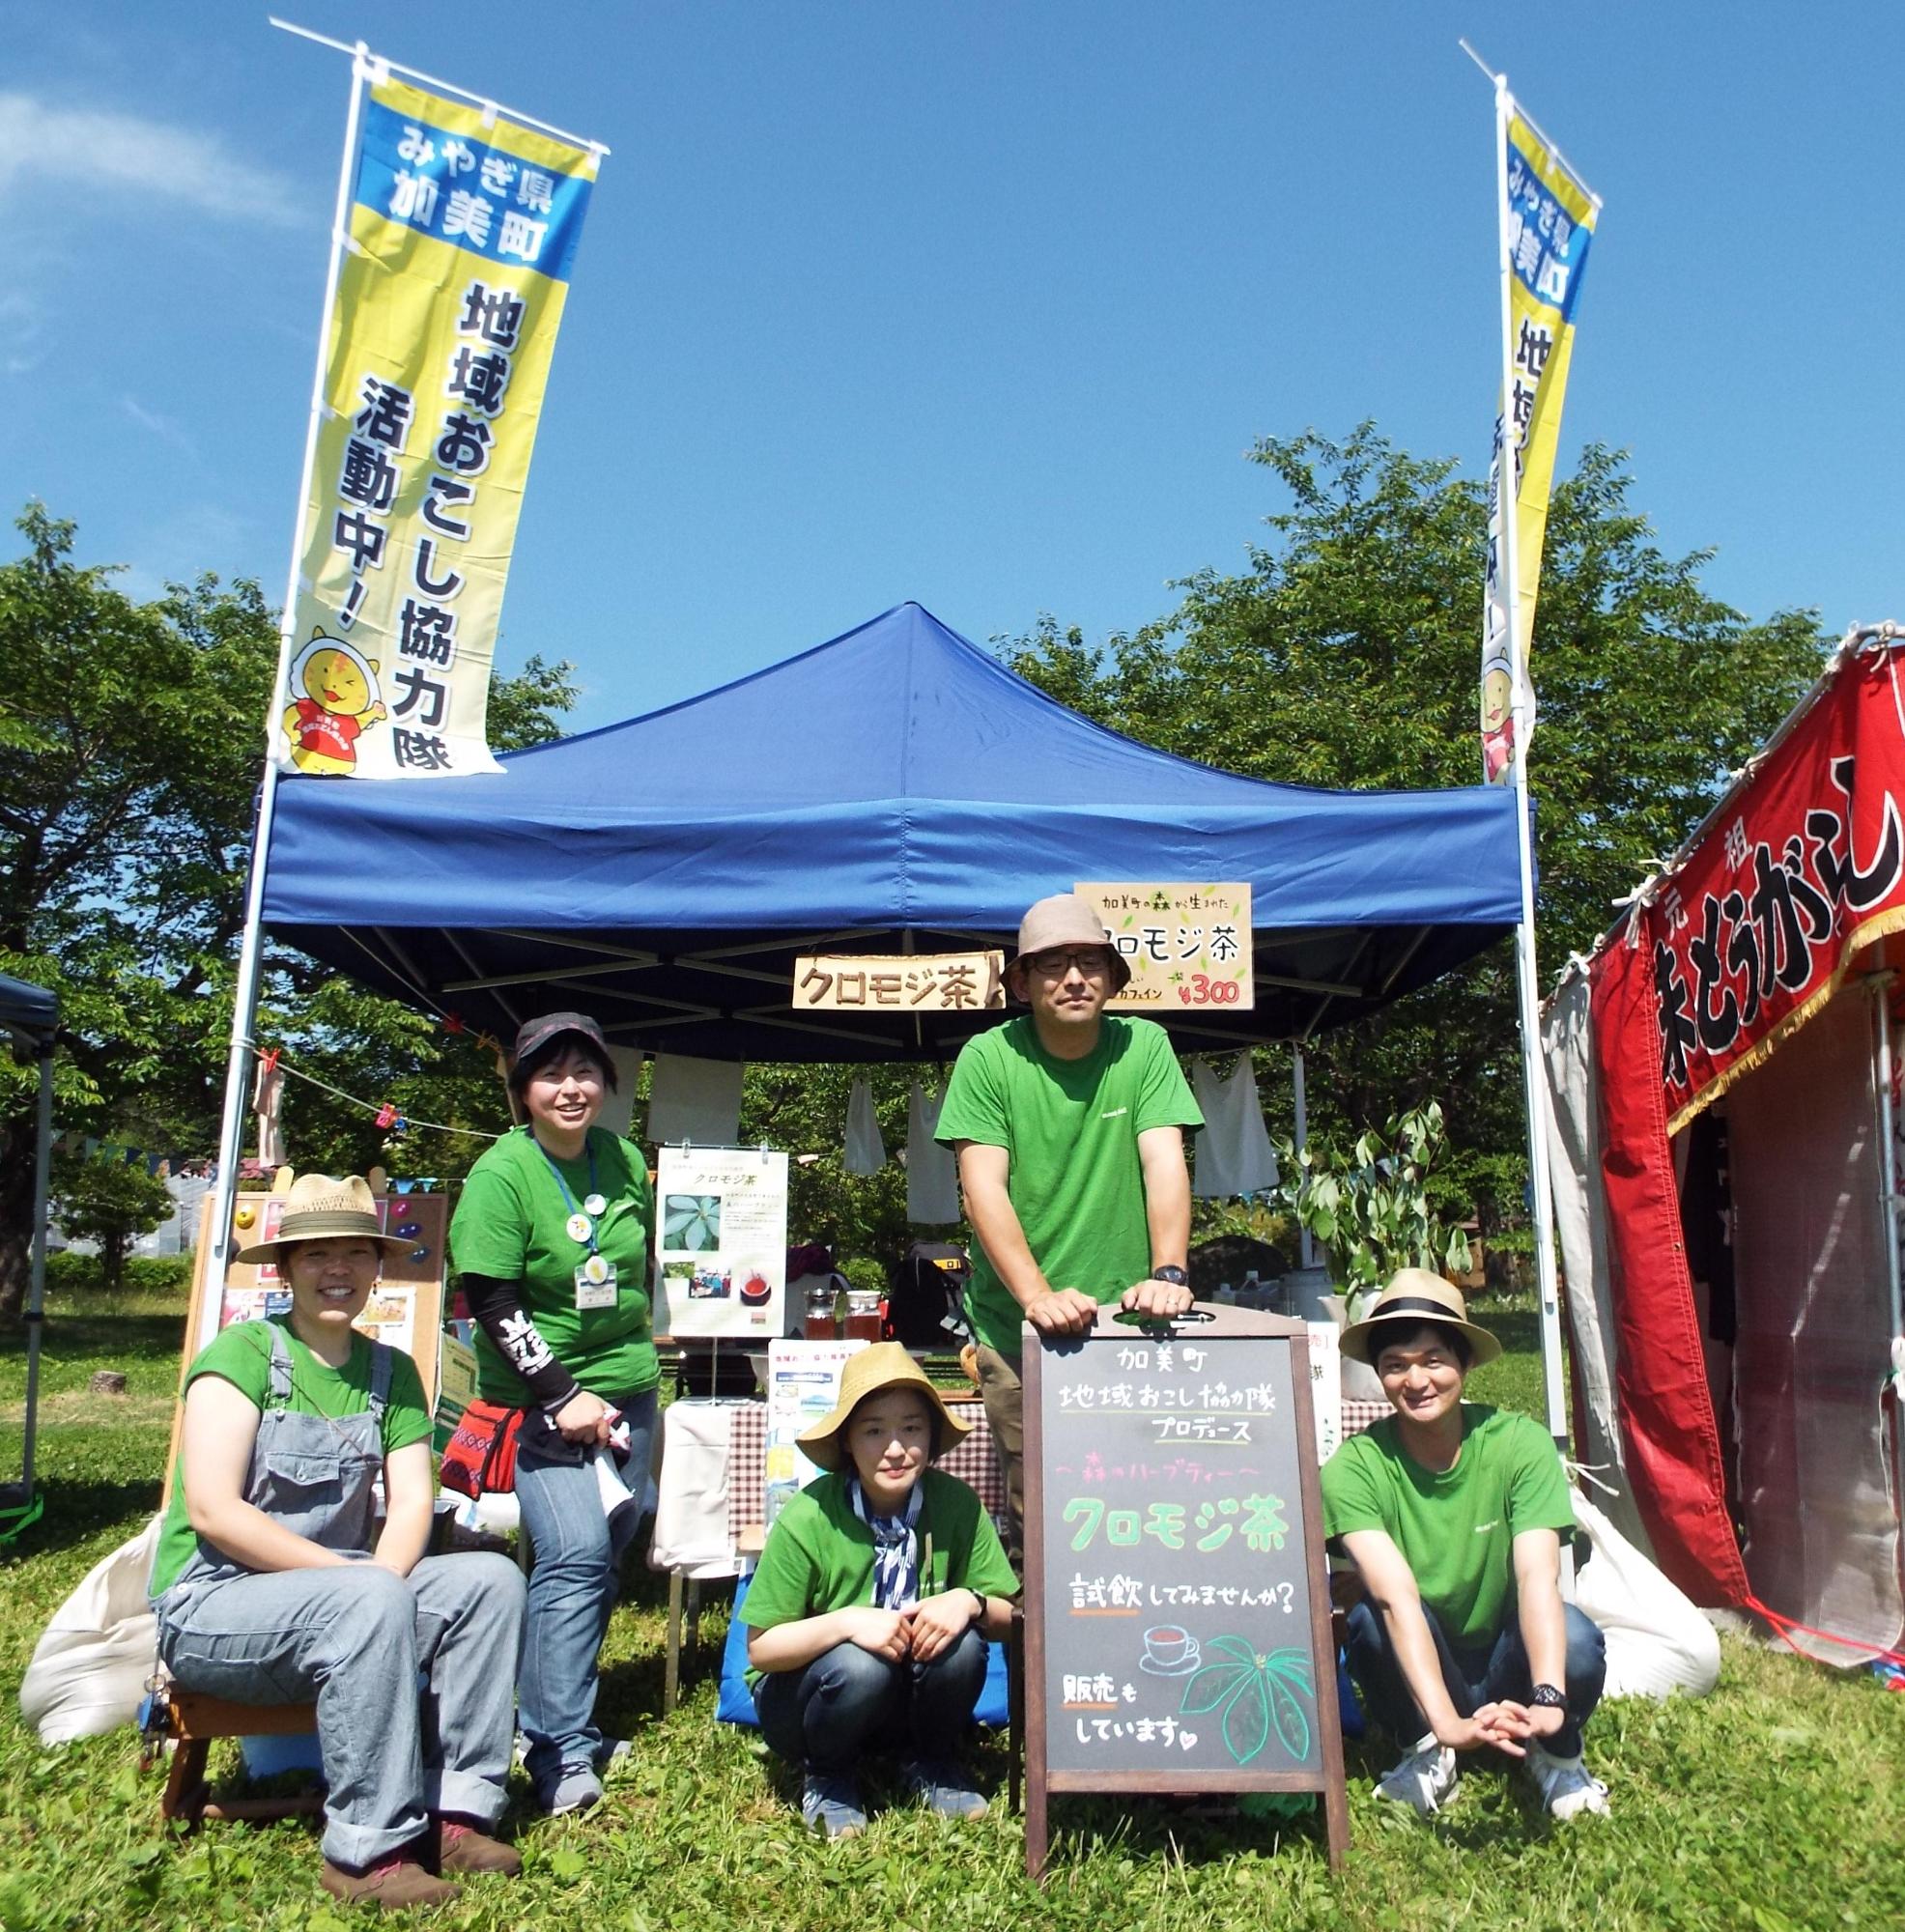 テントの前で、クロモジ茶の看板を囲んでいる加美町地域おこし協力隊の写真